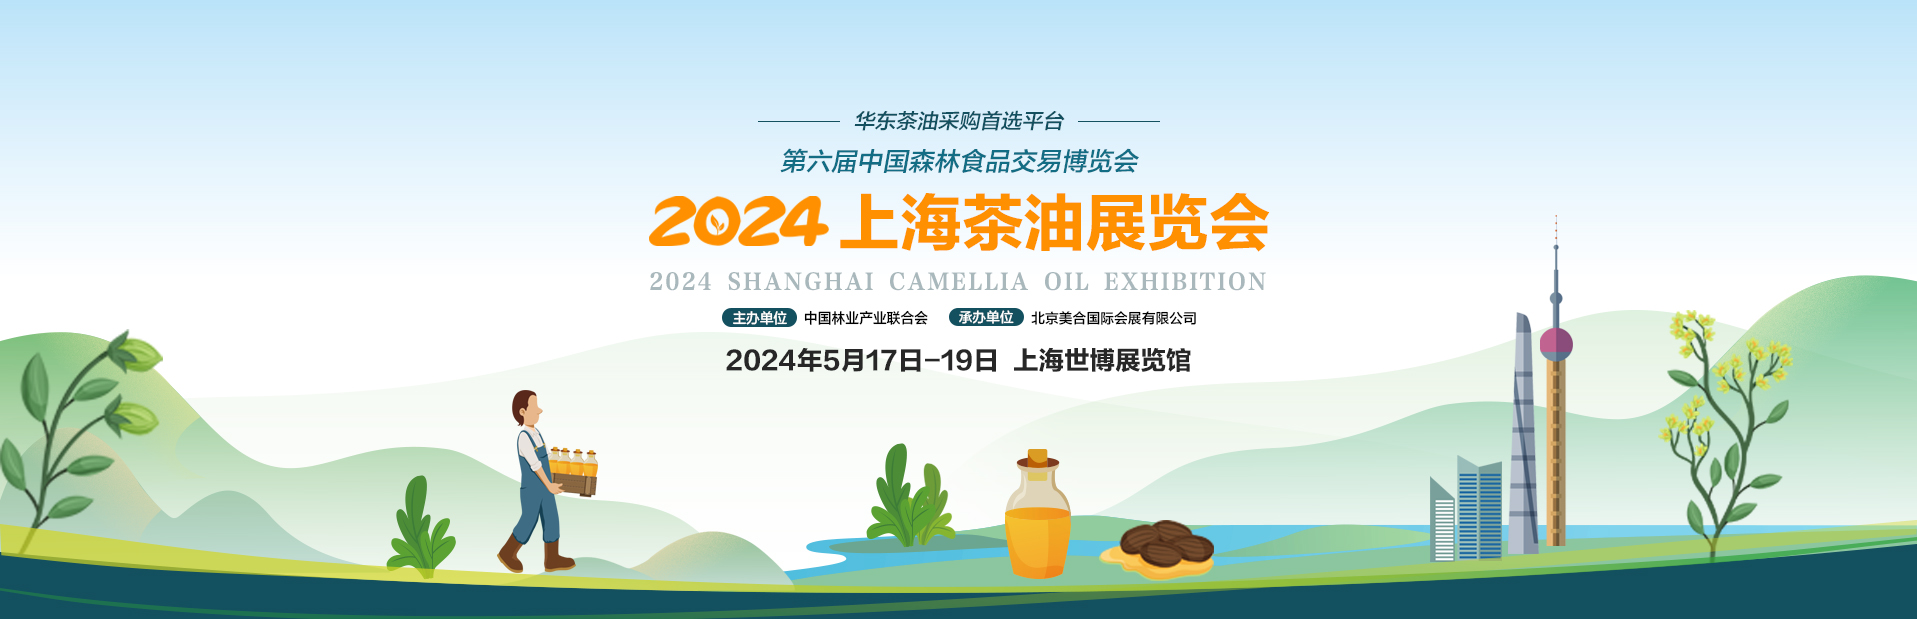 2024上海茶油展览会_美合上海茶油展